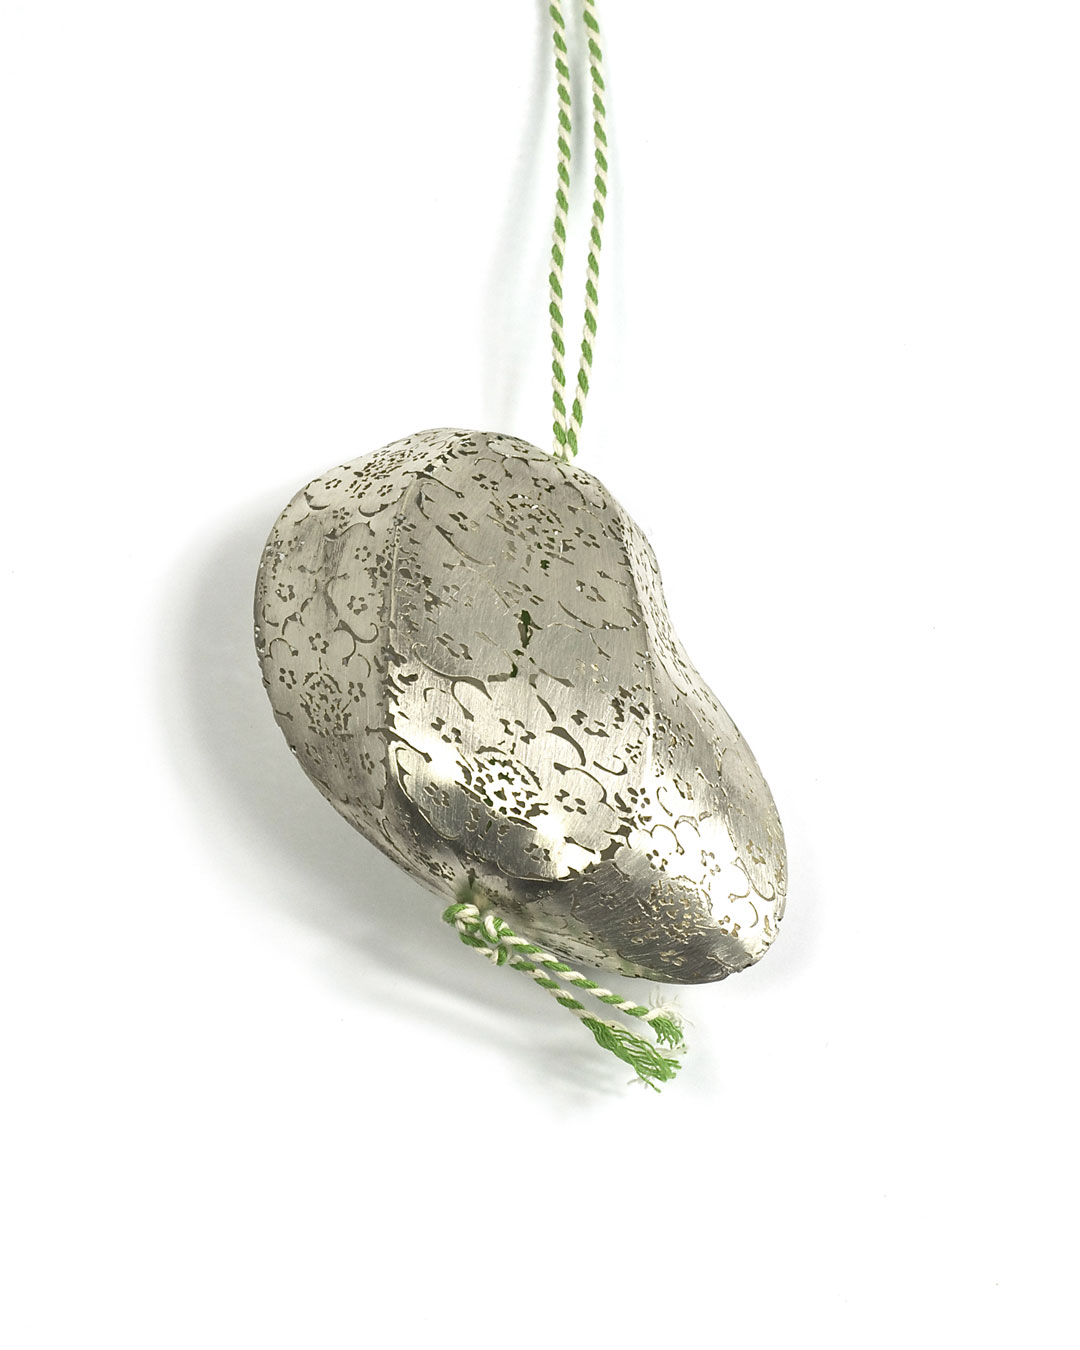 Carla Nuis, Potato, 2010, pendant; silver, cotton, various sizes, €560